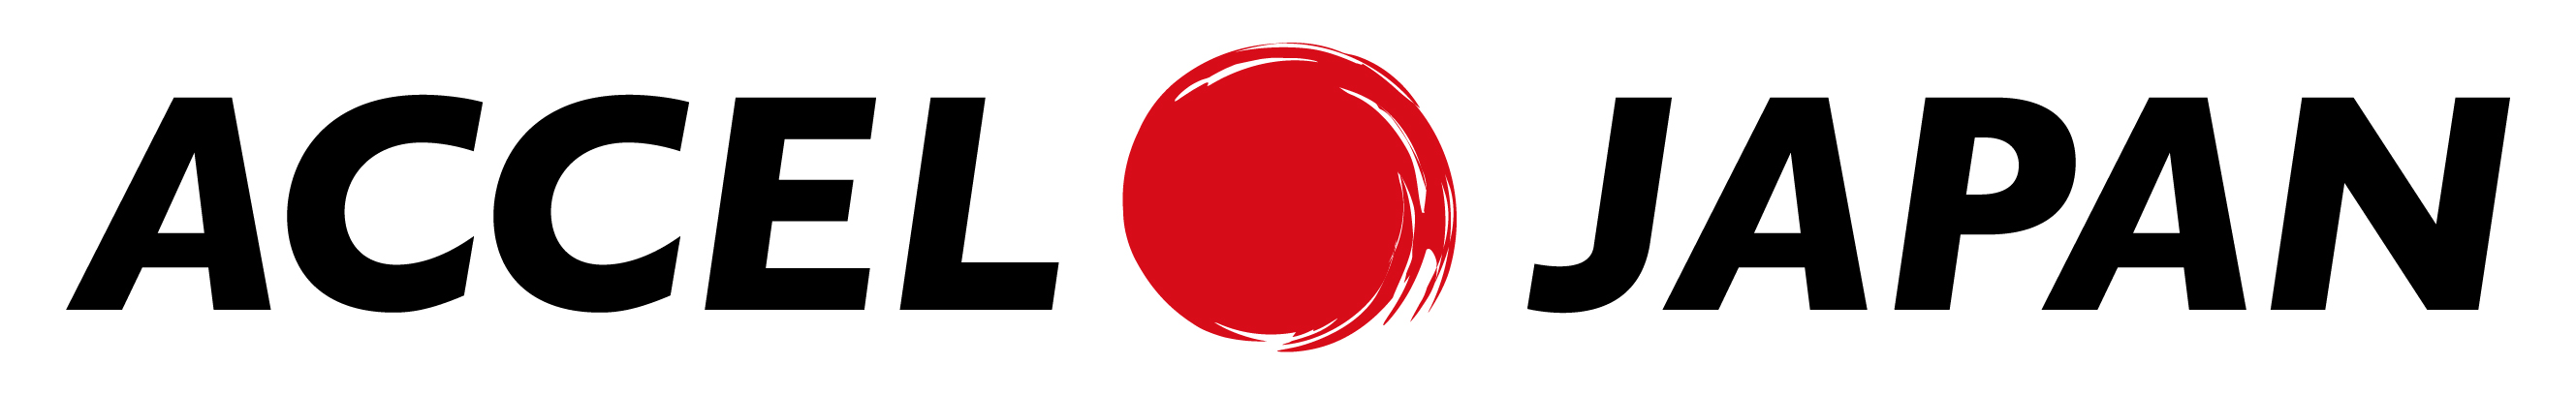 日本経済の成長を加速させる企業応援プロジェクトACCEL JAPAN始動